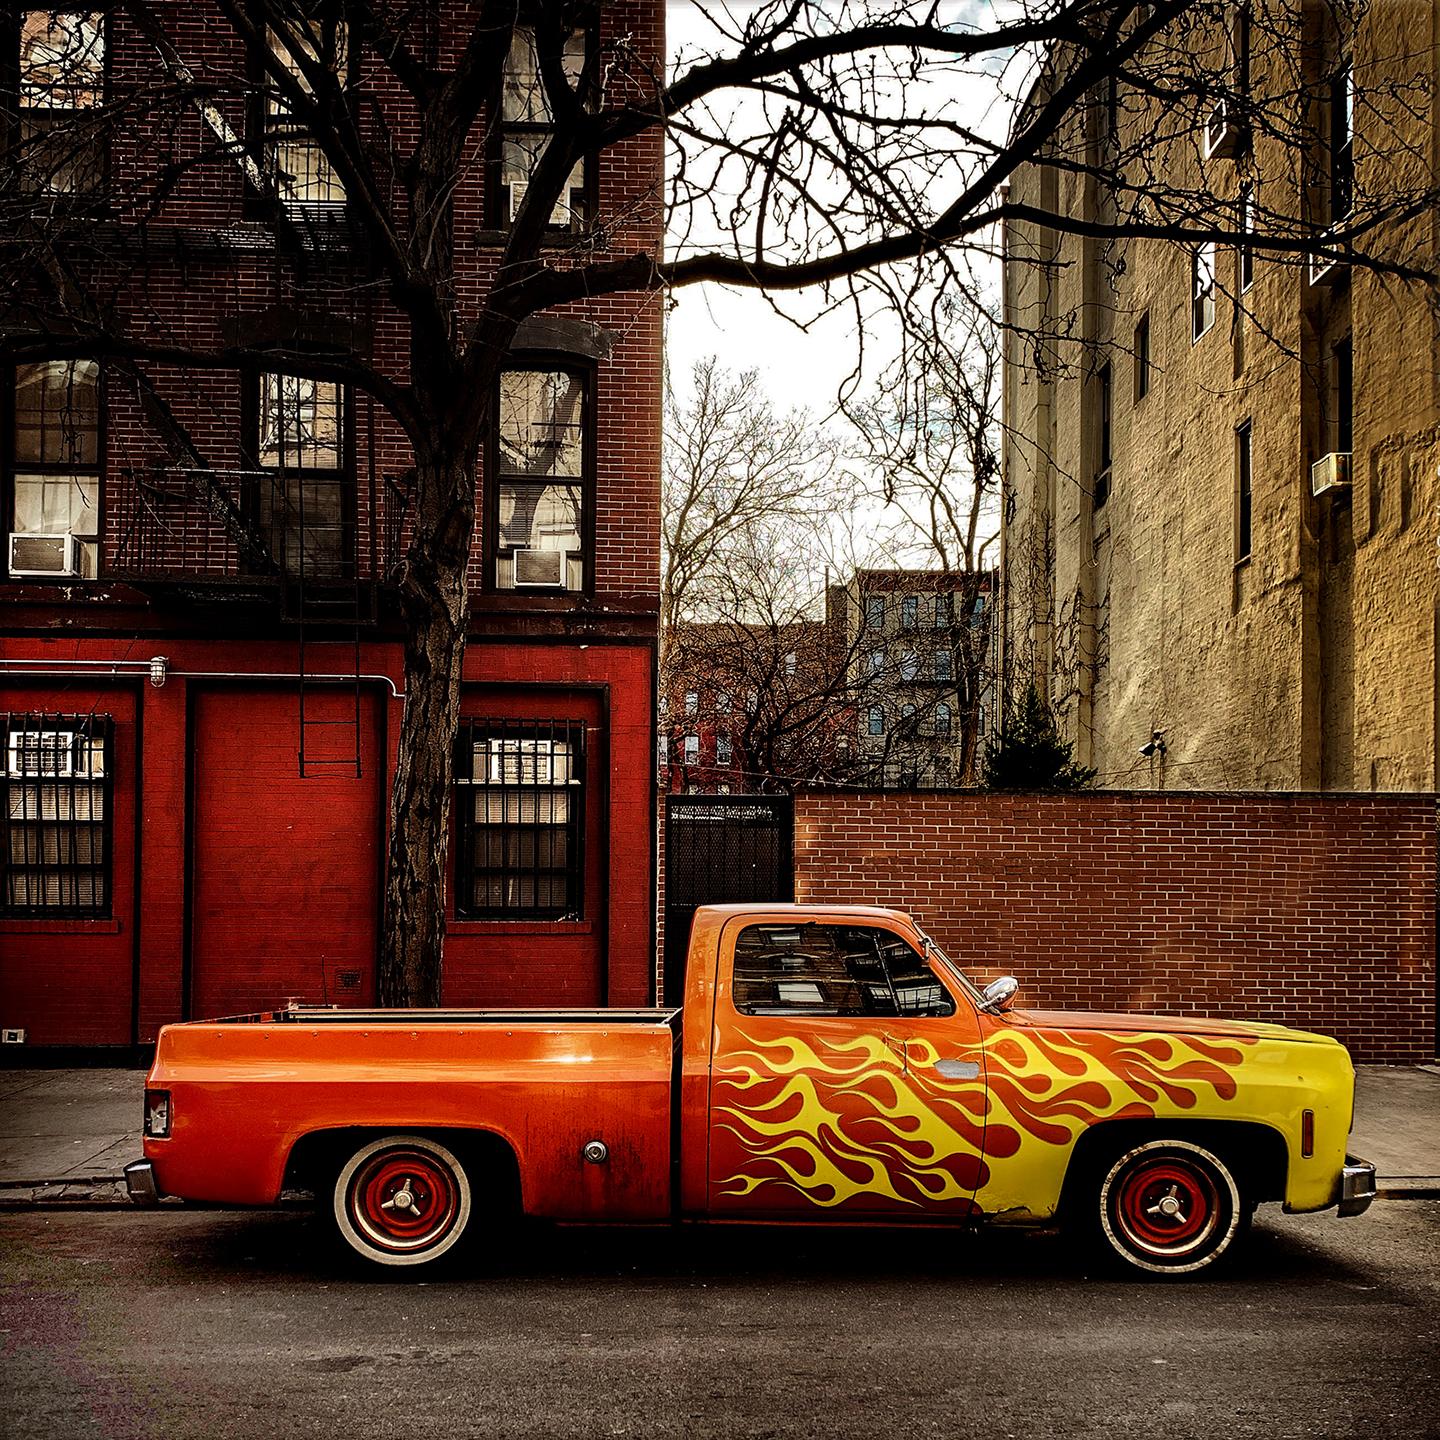 Artistics : Sally Davies (1956)
Titre : Hell's Angels Flame Truck (New York City)
Année : 2022
Support : Impression à jet d'encre sur papier d'archivage
Edition : 12, plus les épreuves
Taille : 17 x 17 pouces
Condit : Excellent
Inscription : Signé,